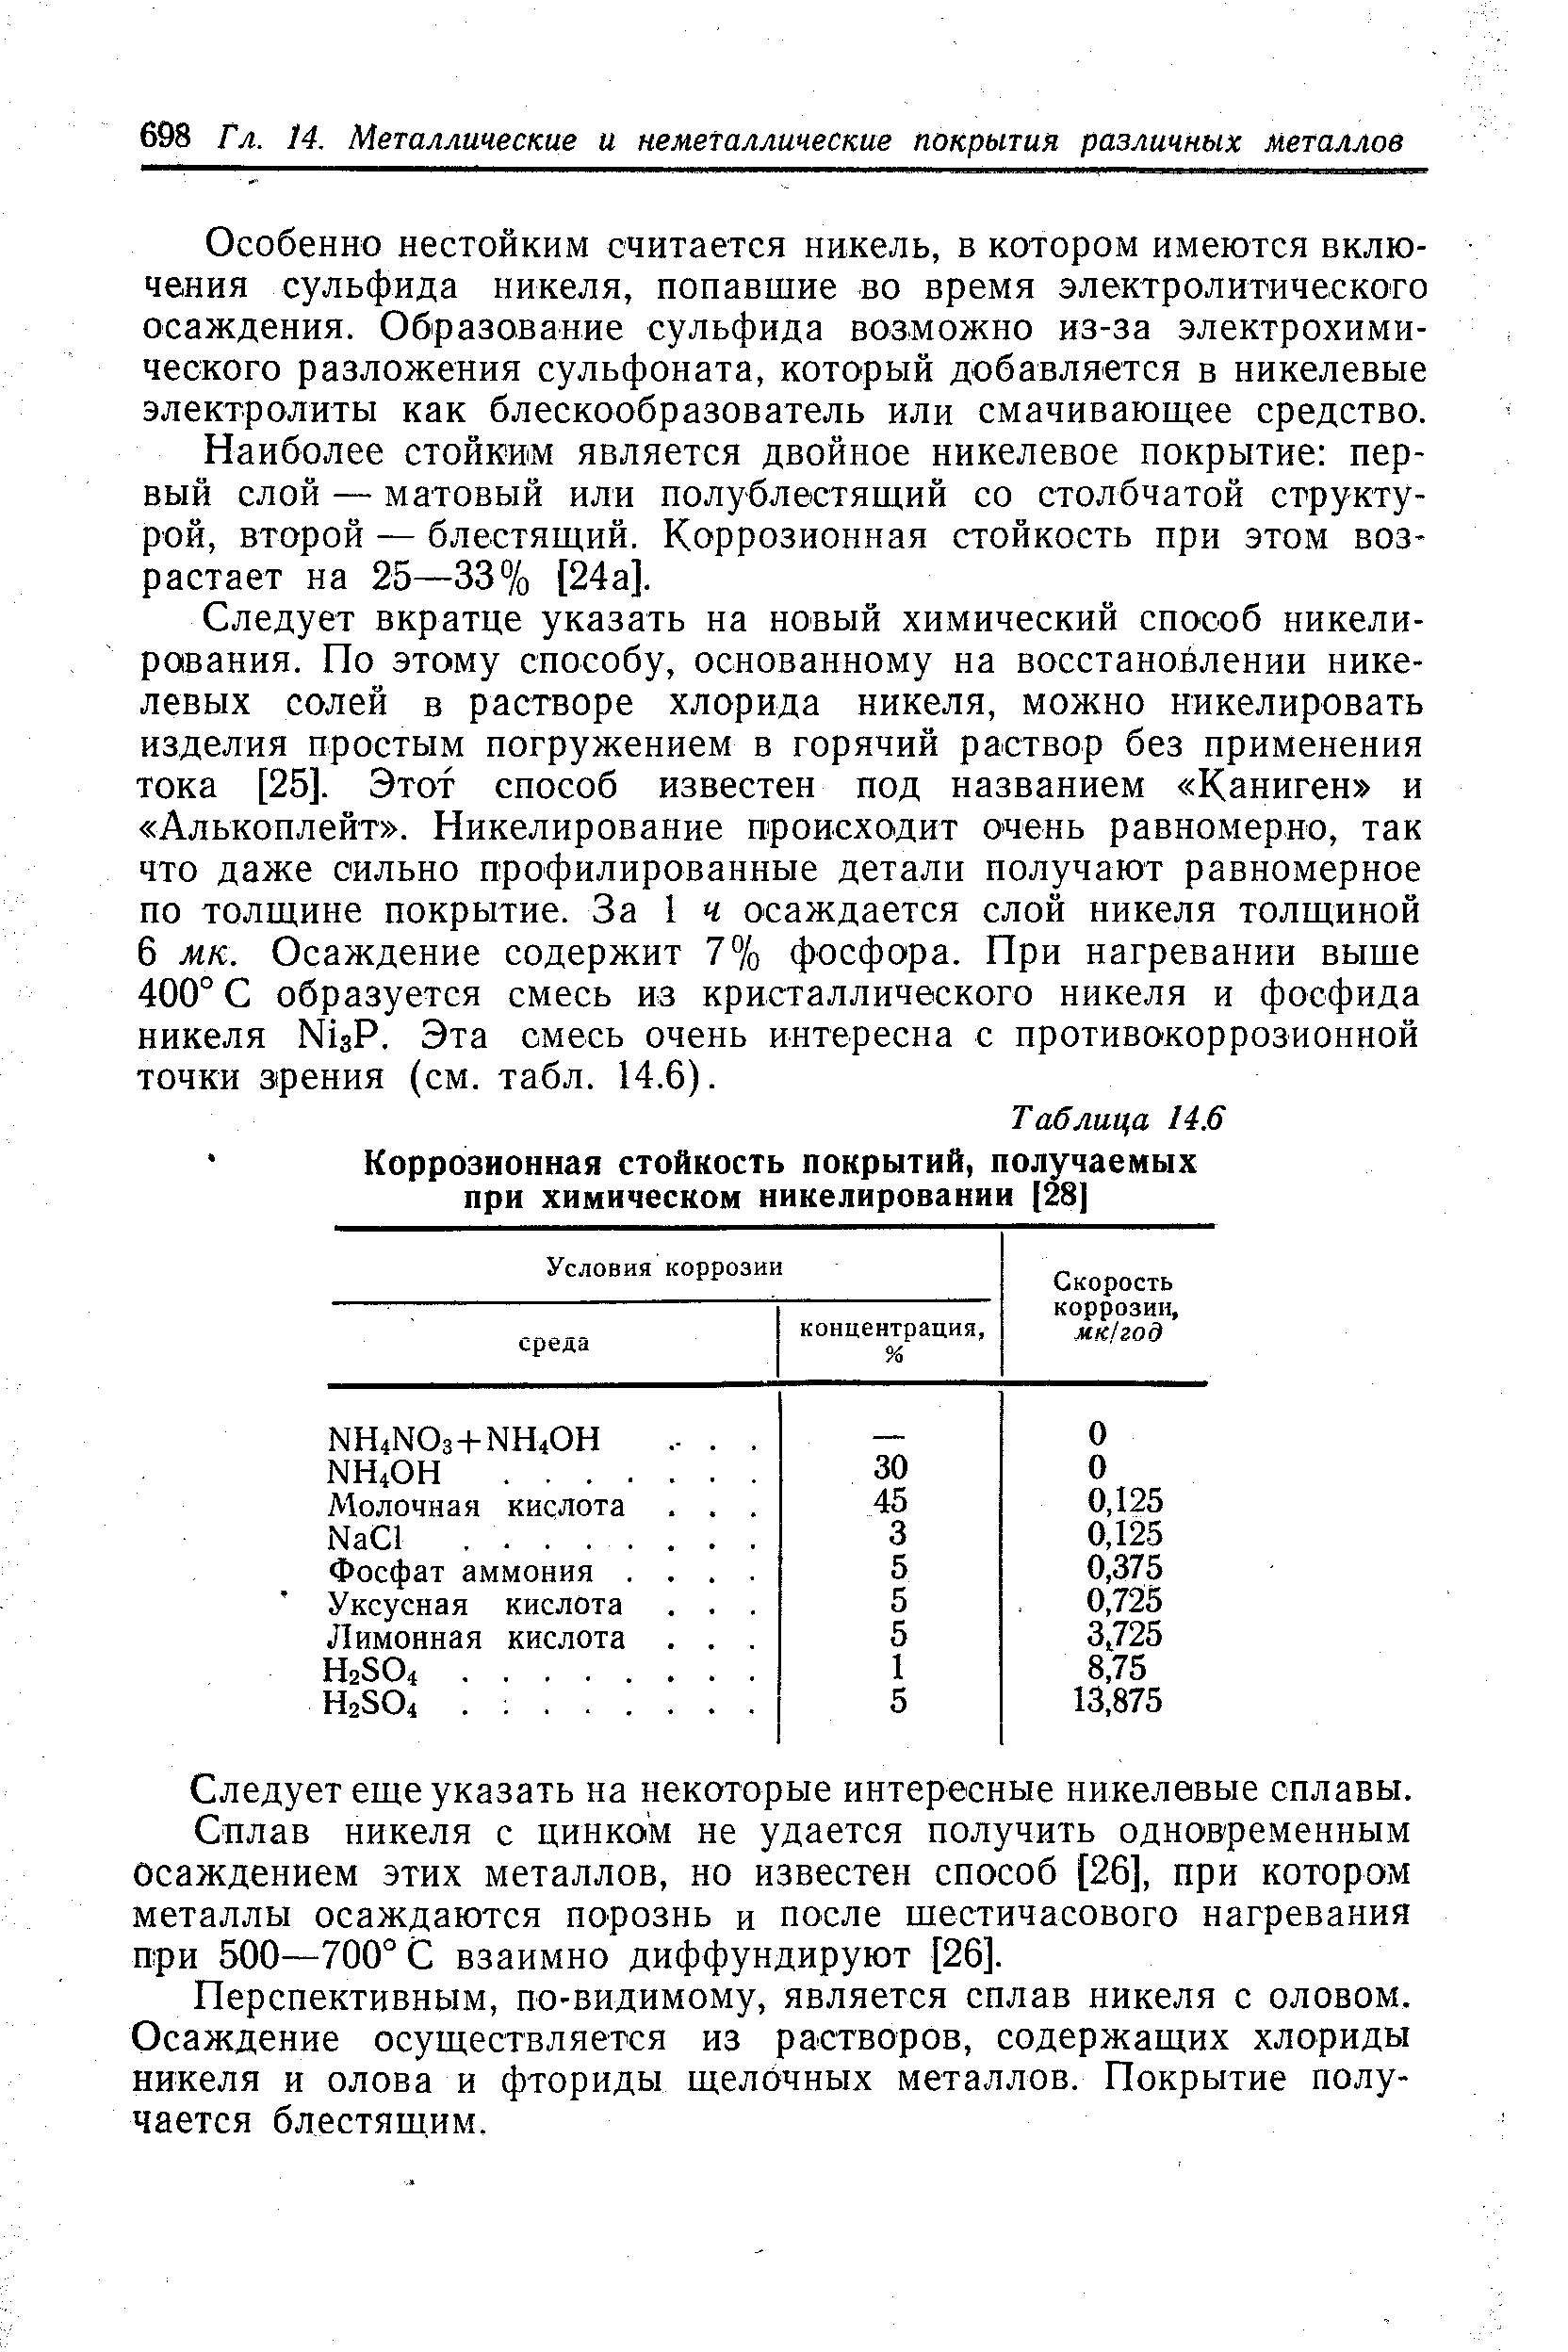 Таблица 14.6 Коррозионная стойкость покрытий, получаемых при химическом никелировании [28]
